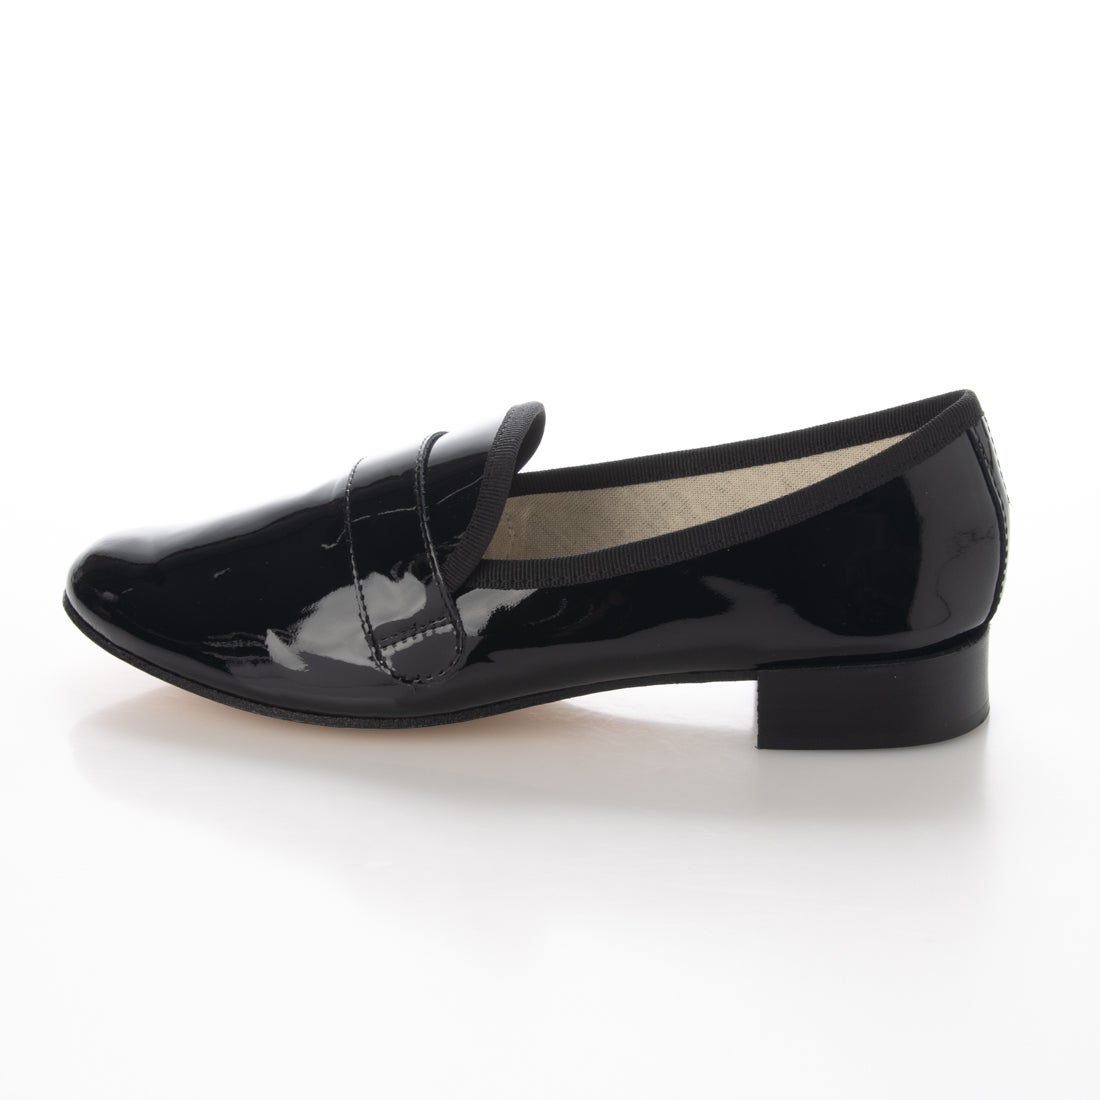 〇レペット repetto MICHAEL New size （ブラックエナメル） -靴 